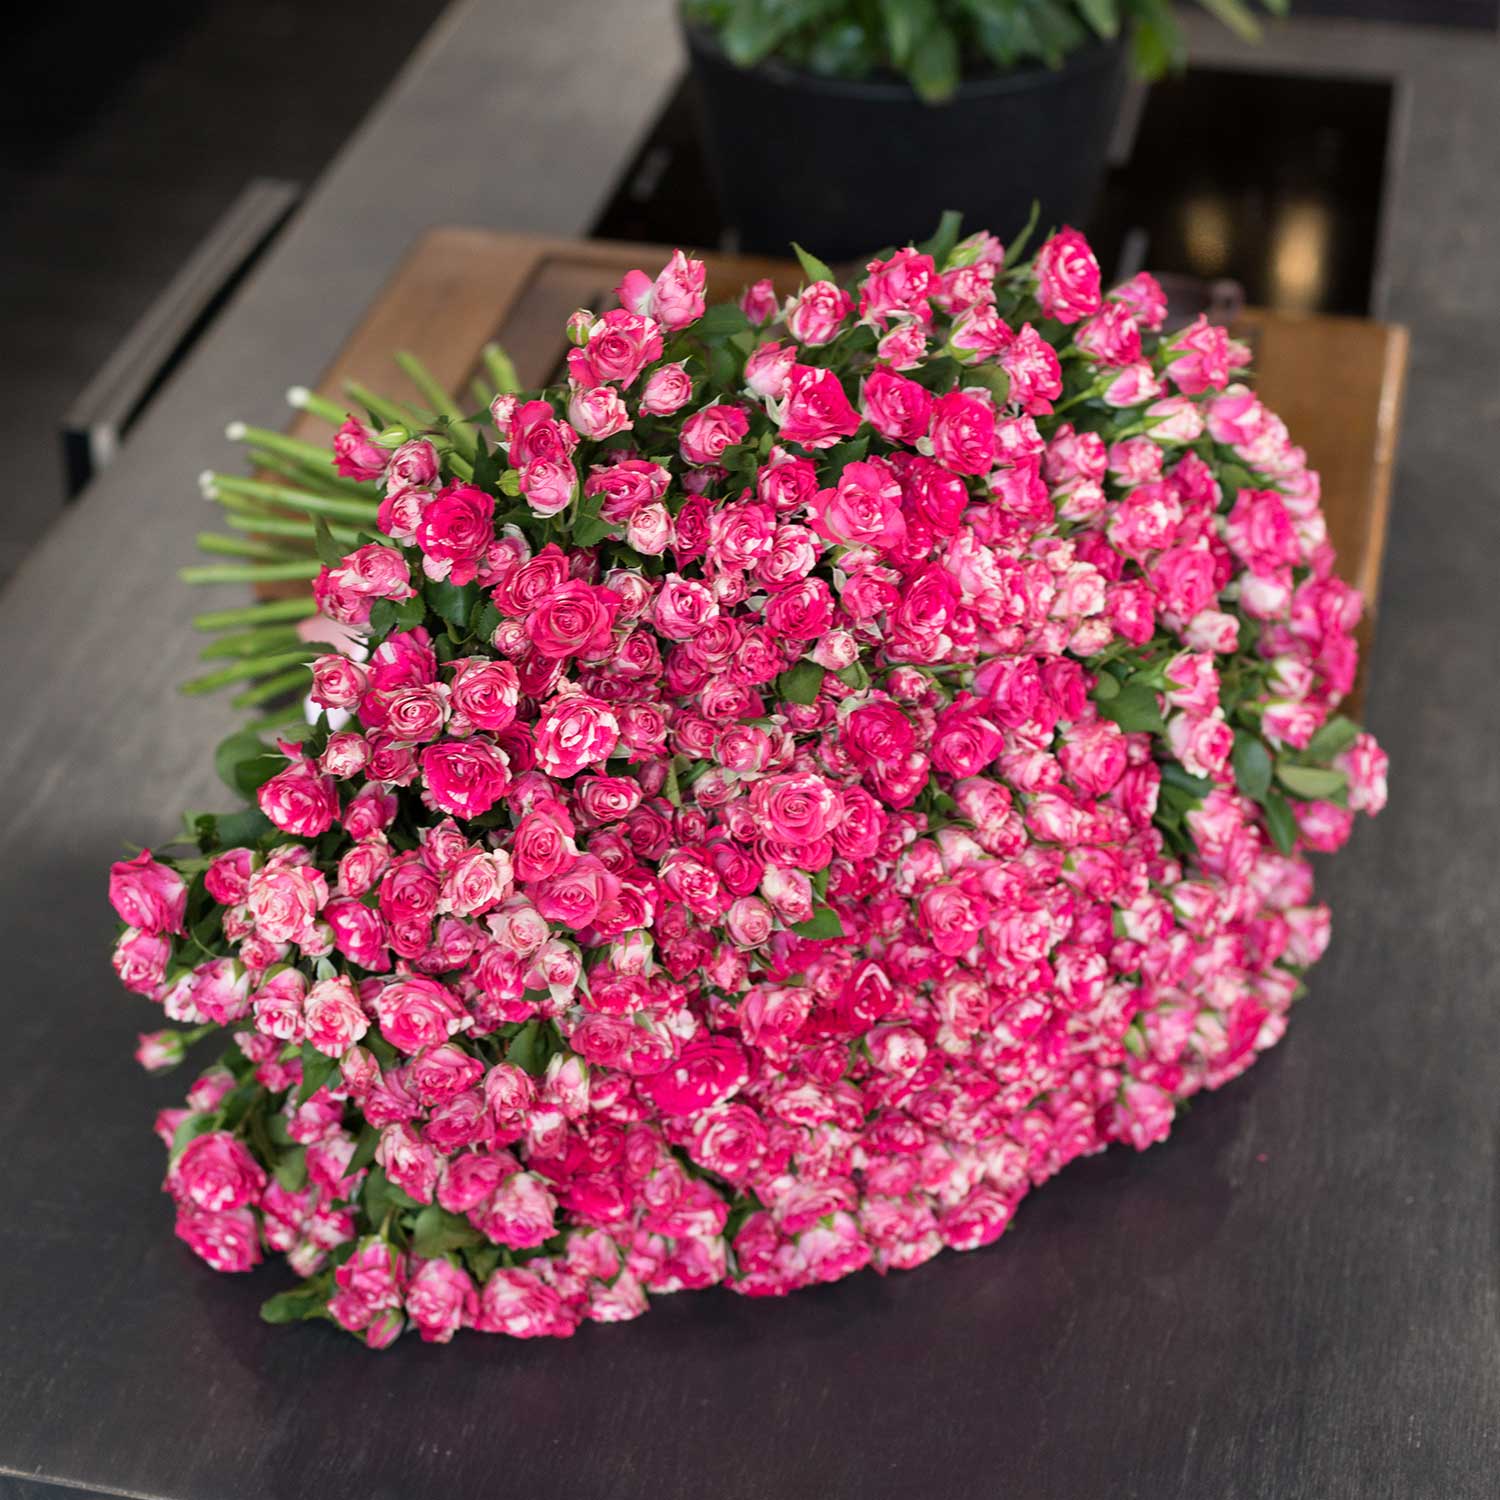 Кустовая роза Файер Воркс 50/60 см 101 шт - Купить цветы